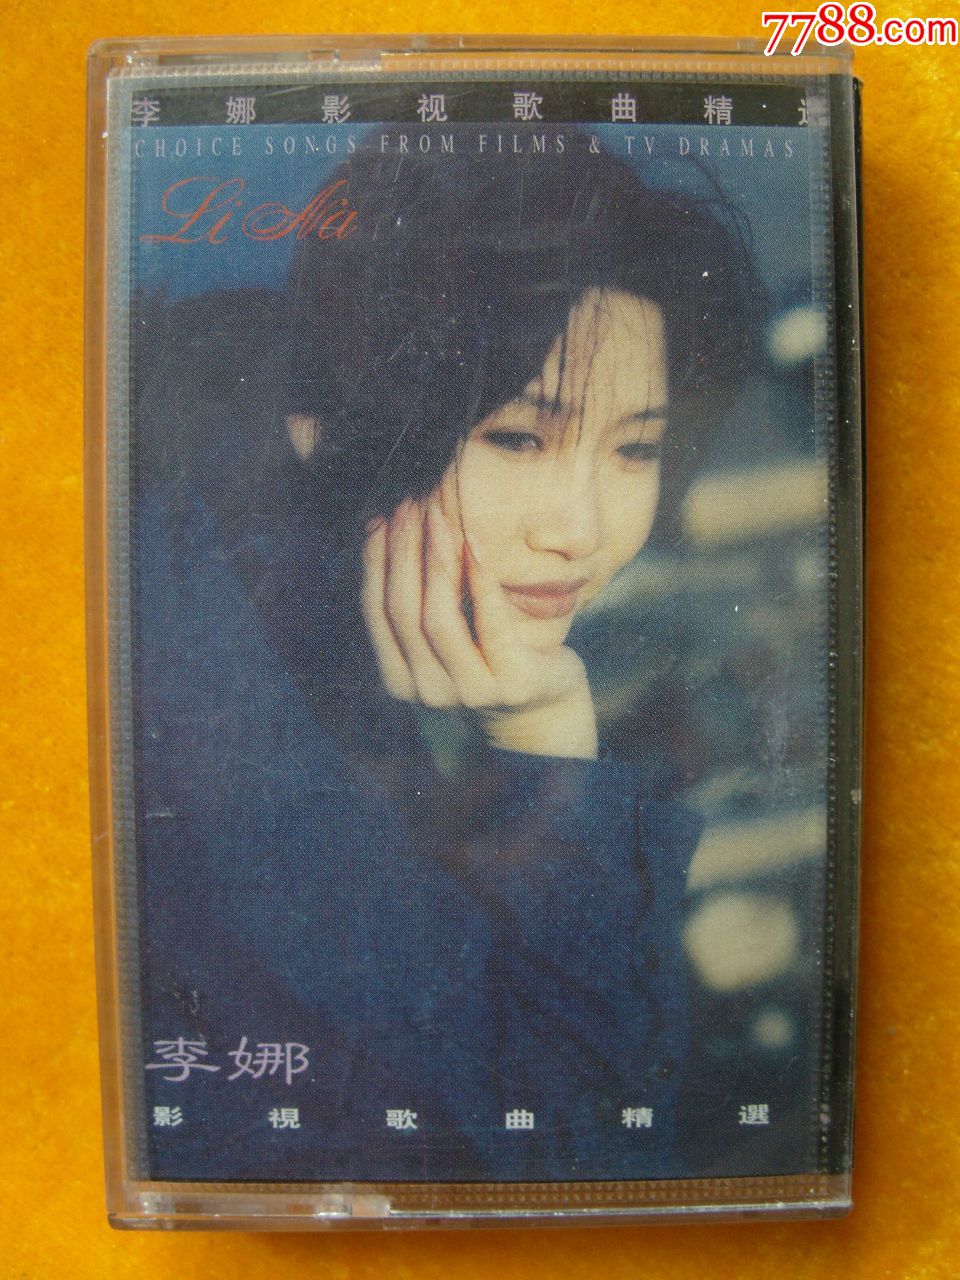 歌手李娜专辑图片